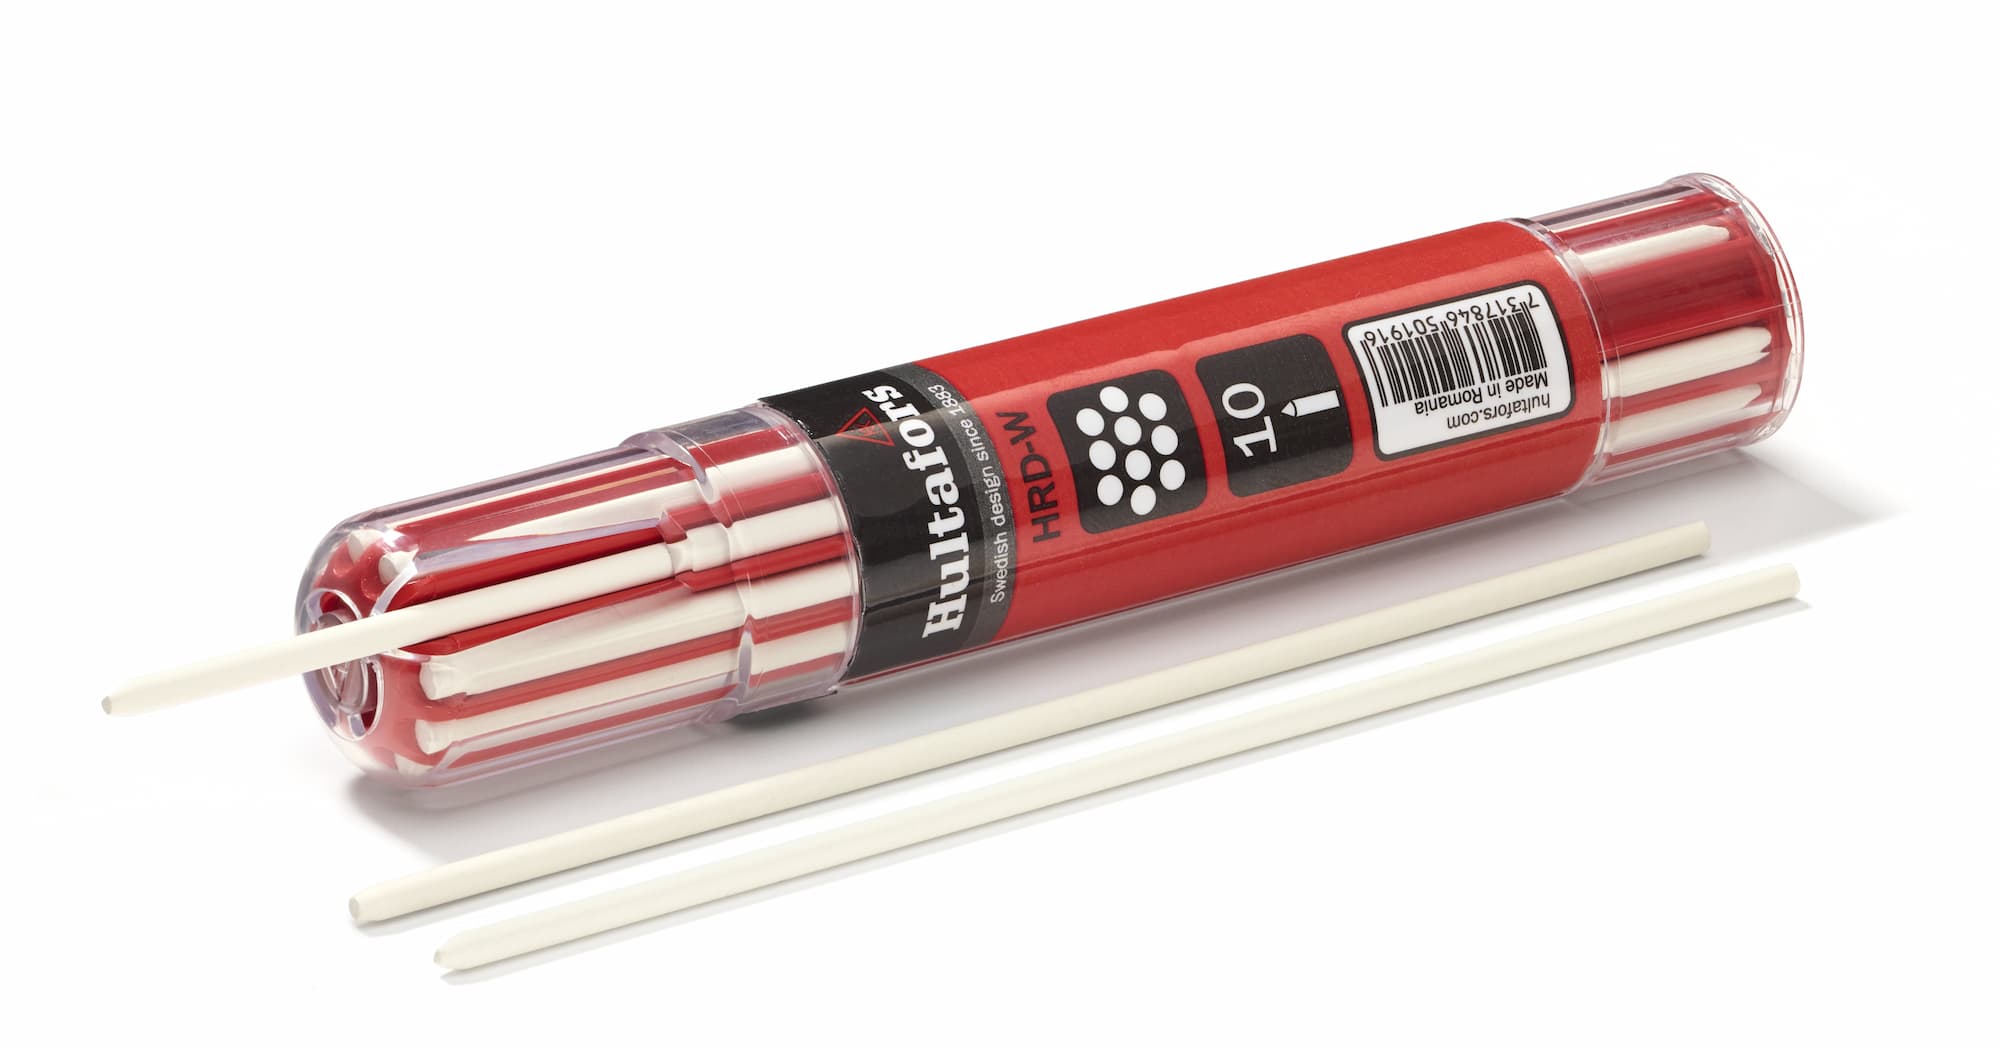 Hultafors Dry Marker Pencil Refills